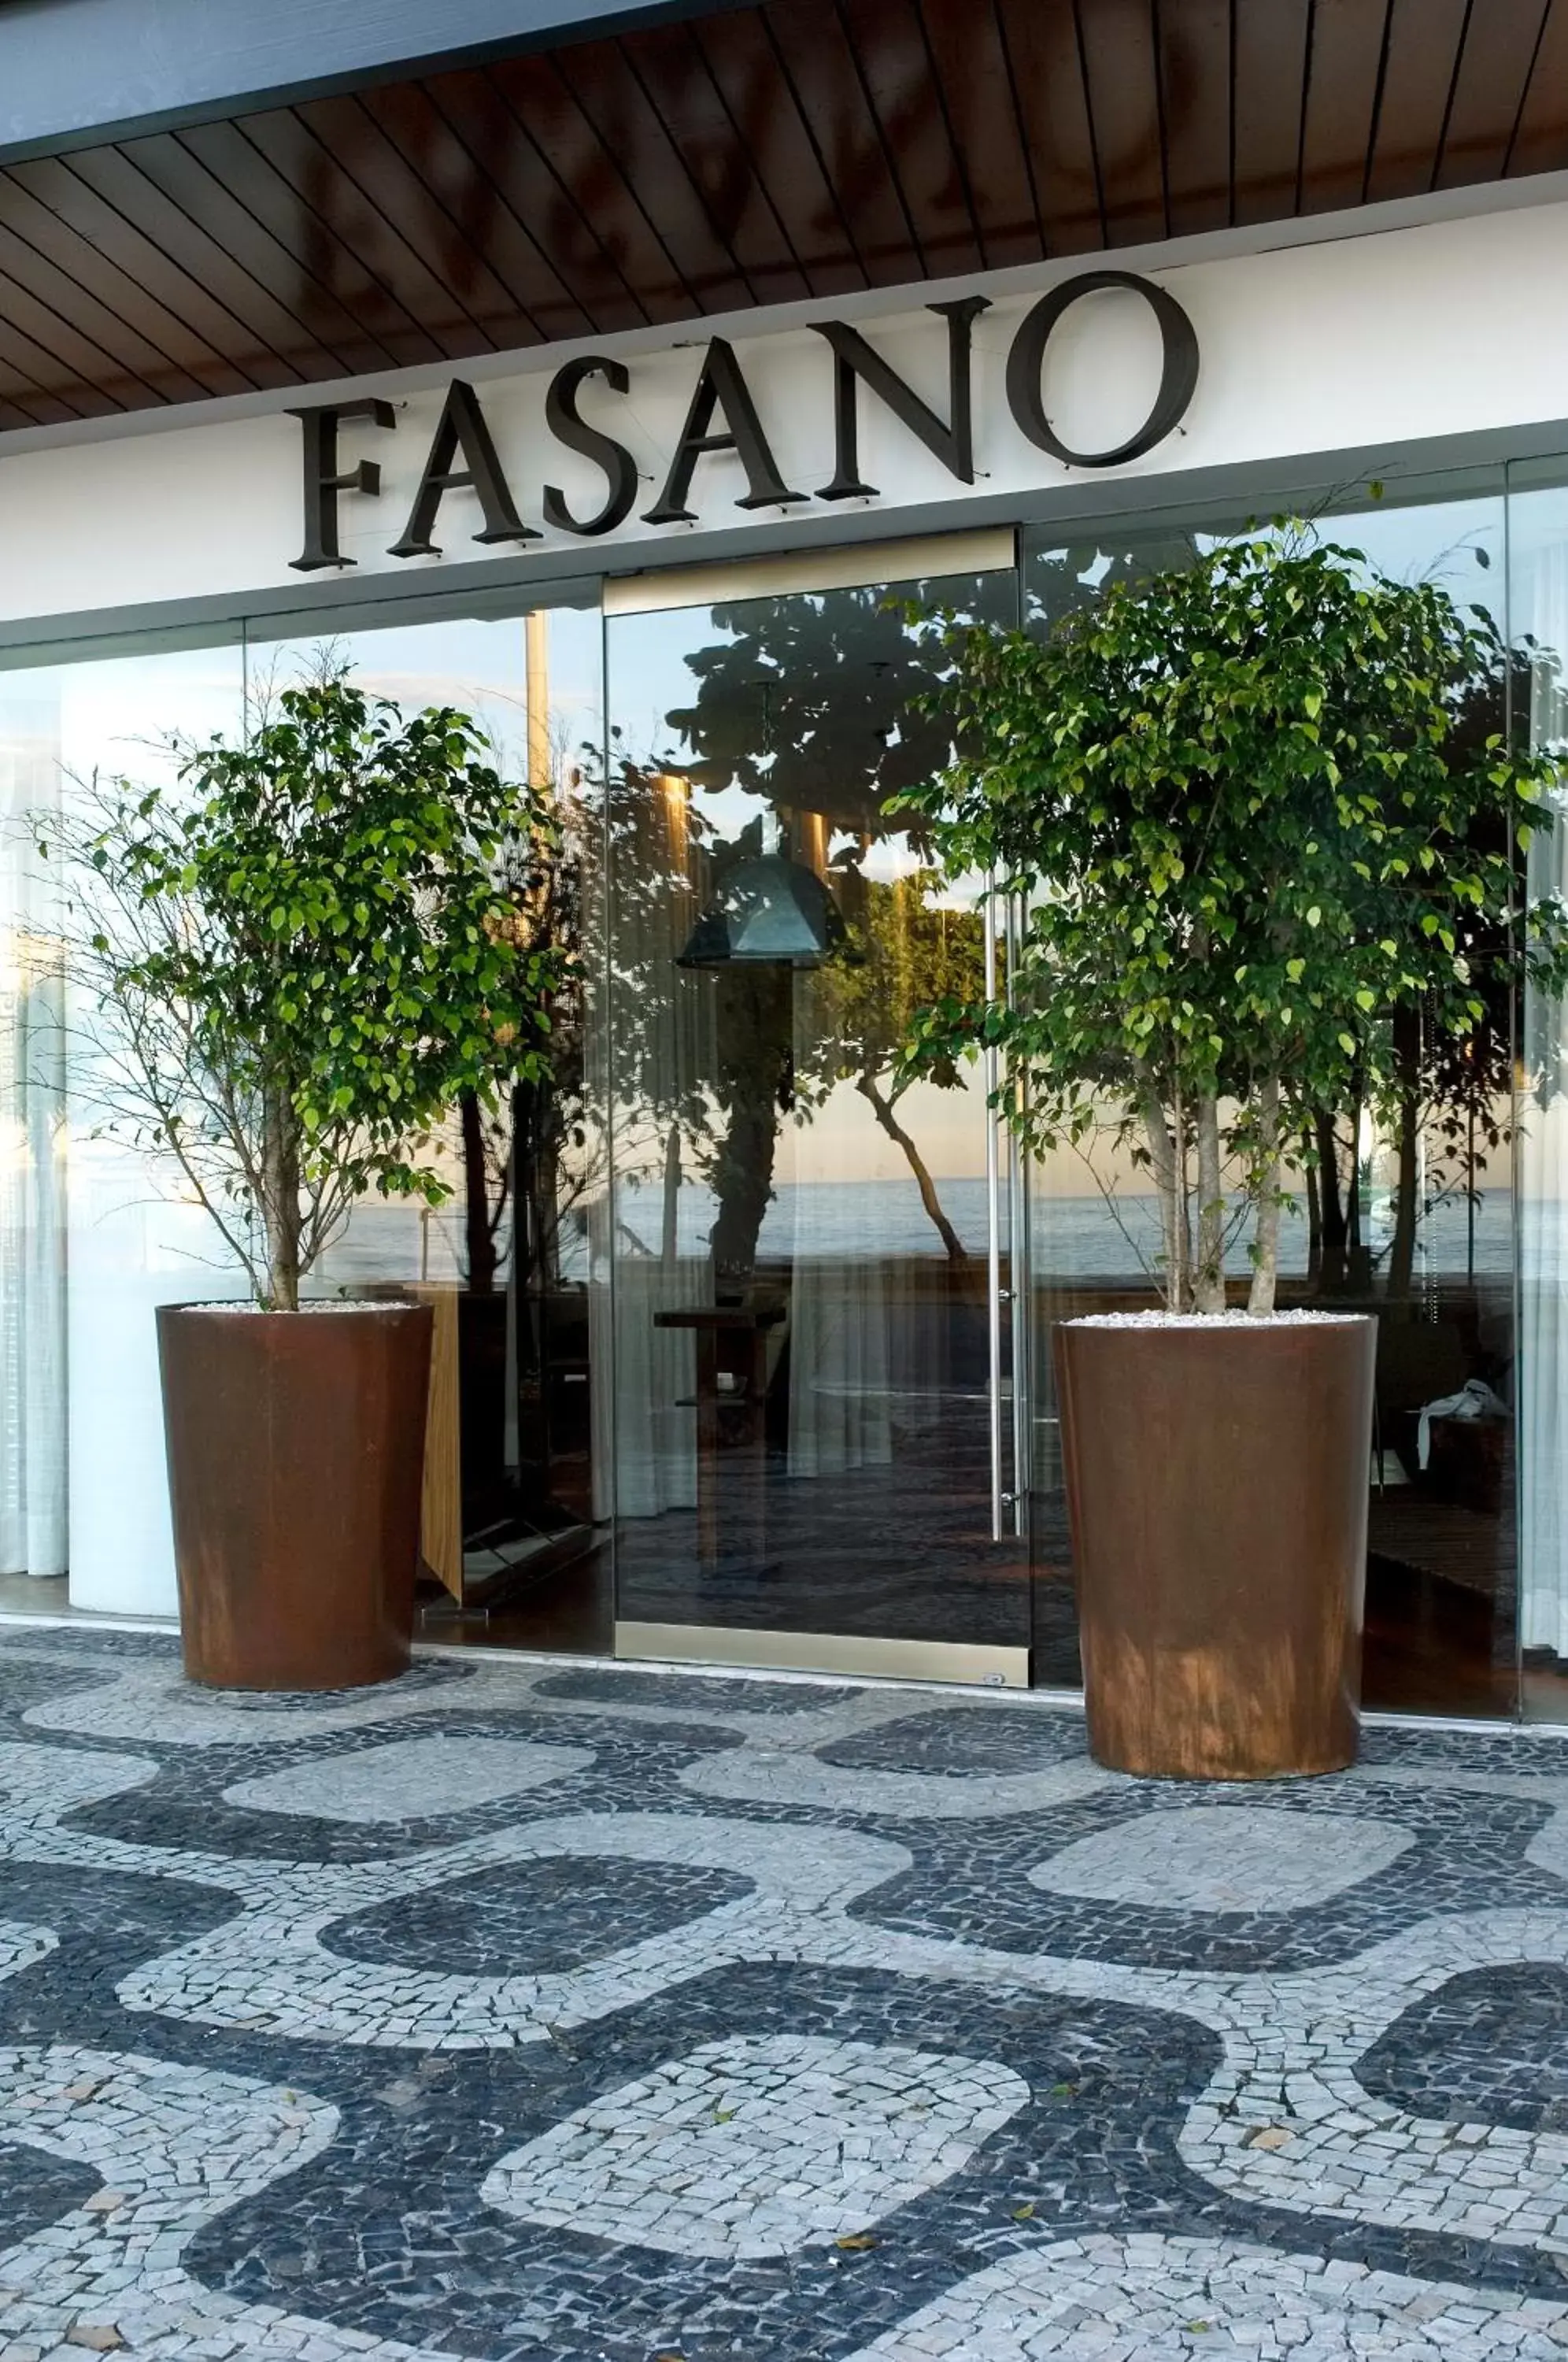 Facade/entrance in Hotel Fasano Rio de Janeiro